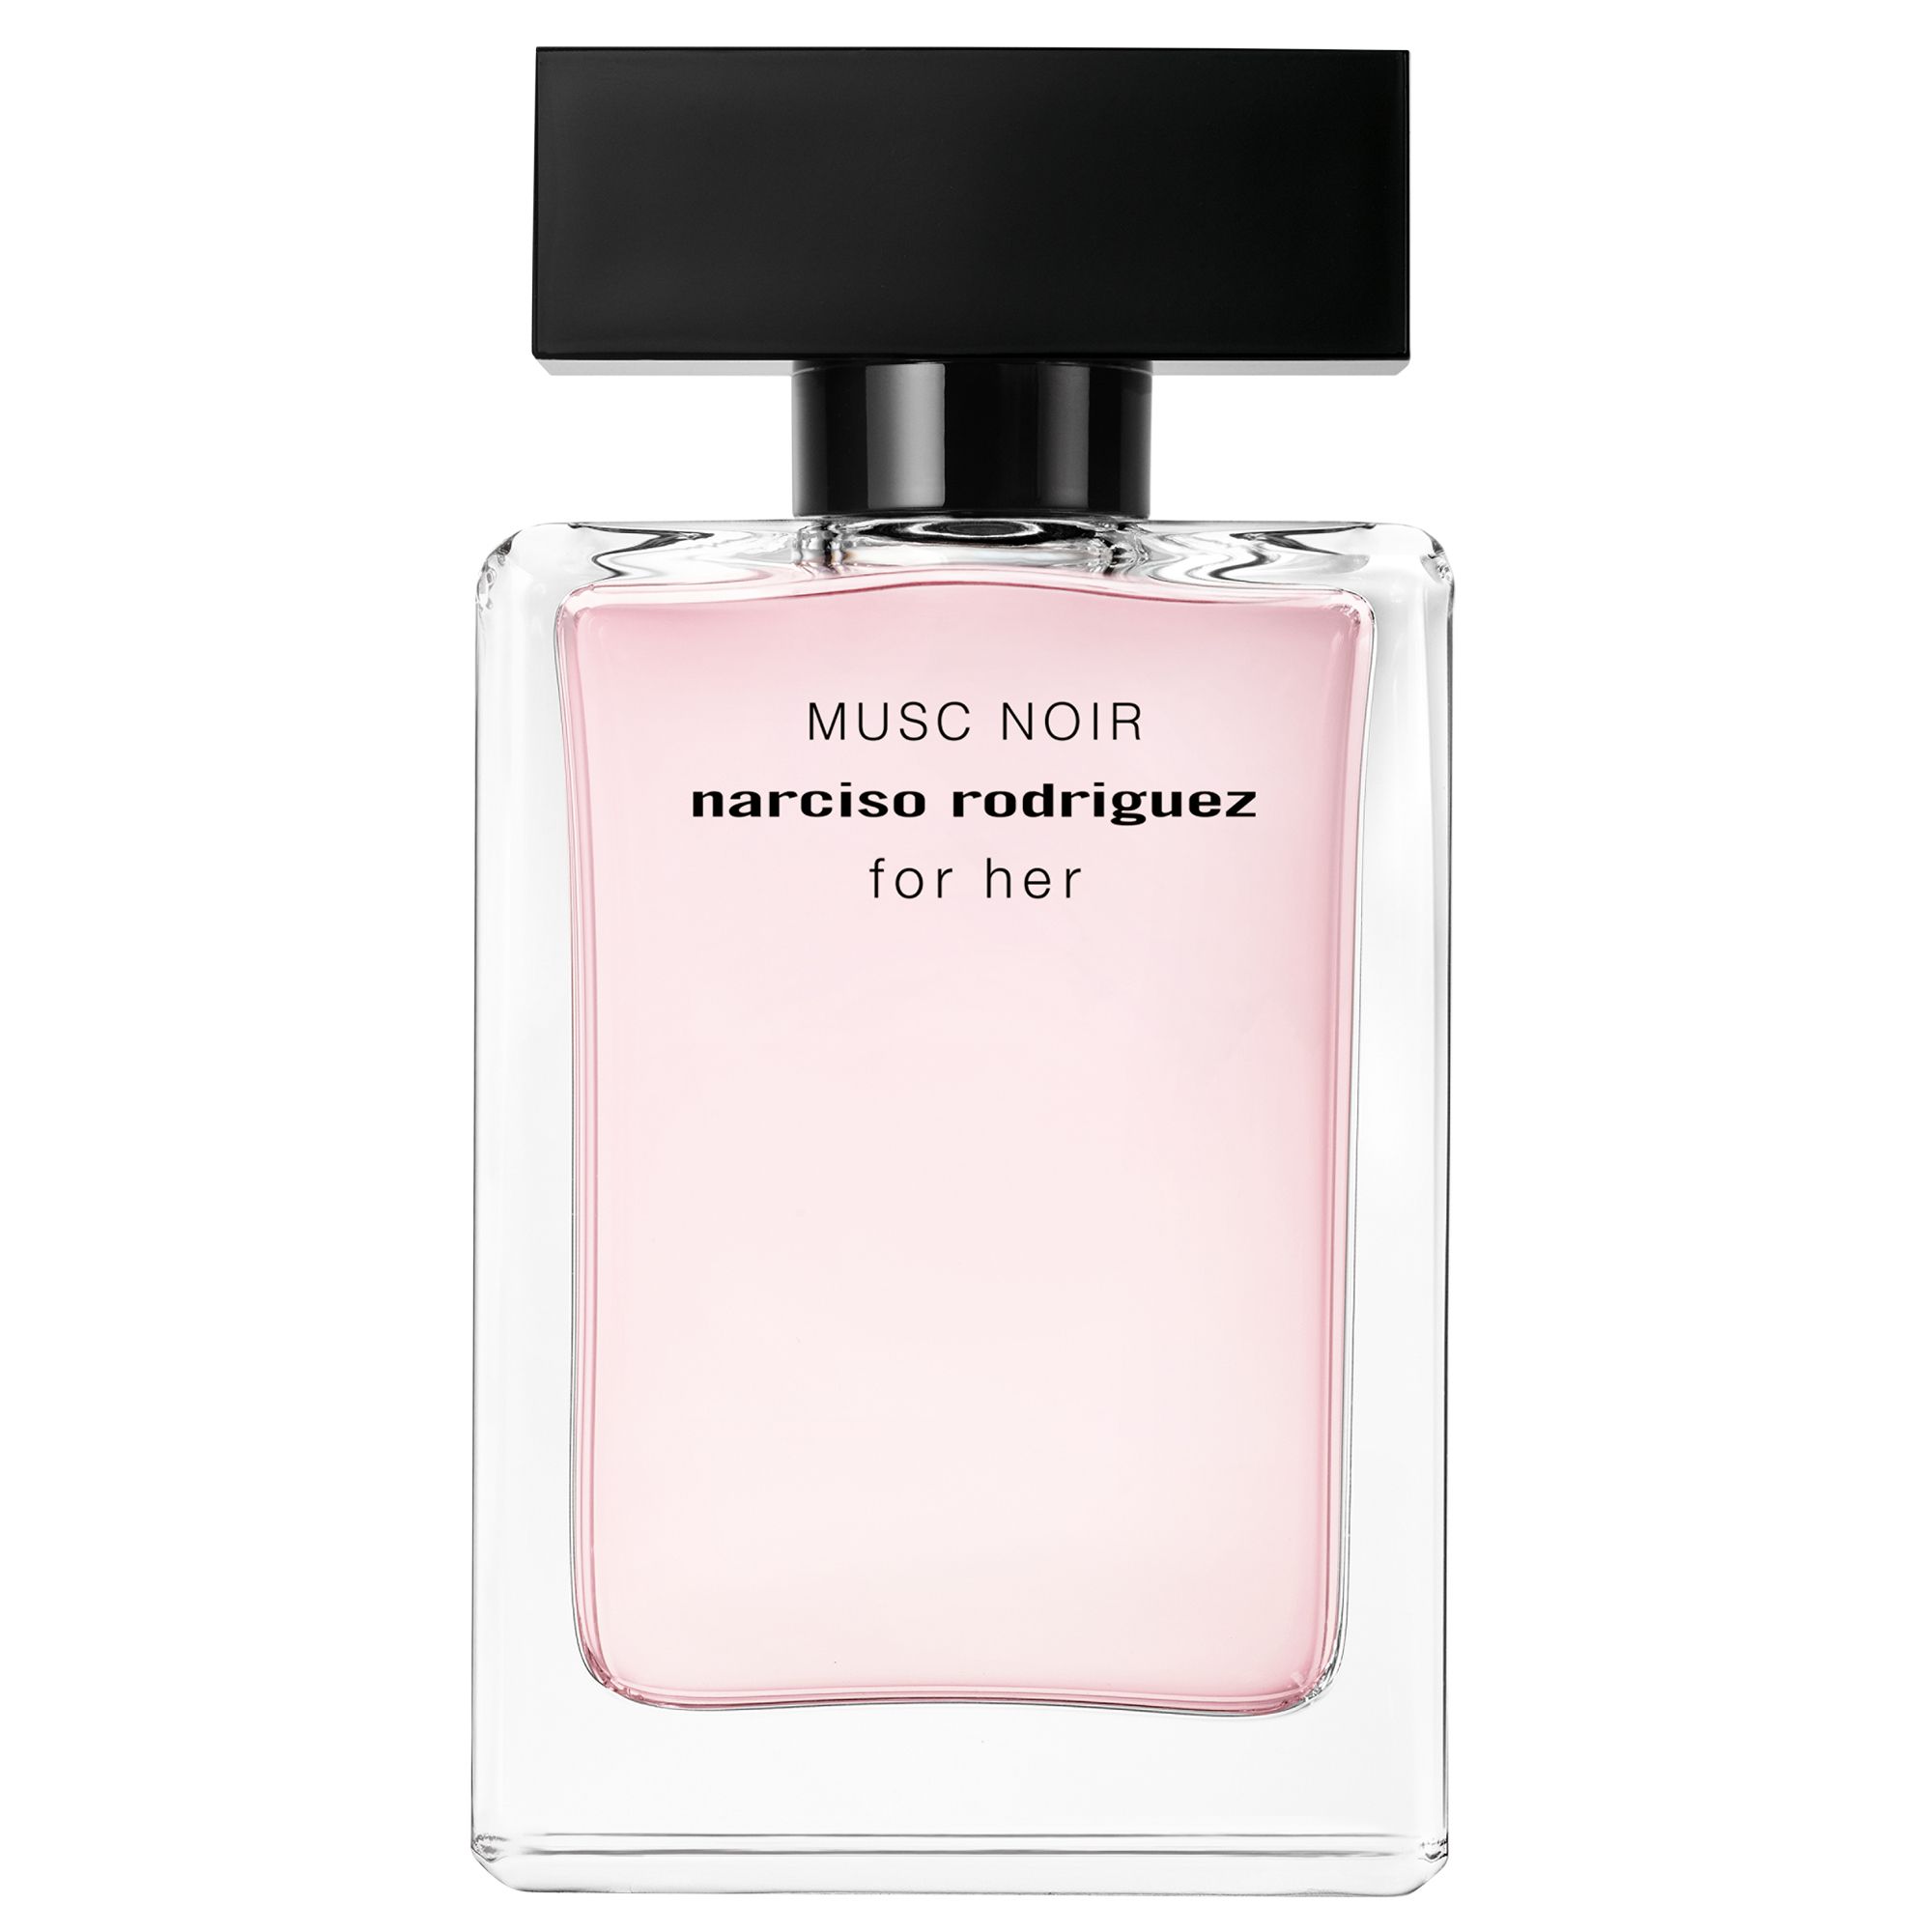 Narciso Rodriguez For Her Musc Noir Eau de Parfum, 50ml at John Lewis ...